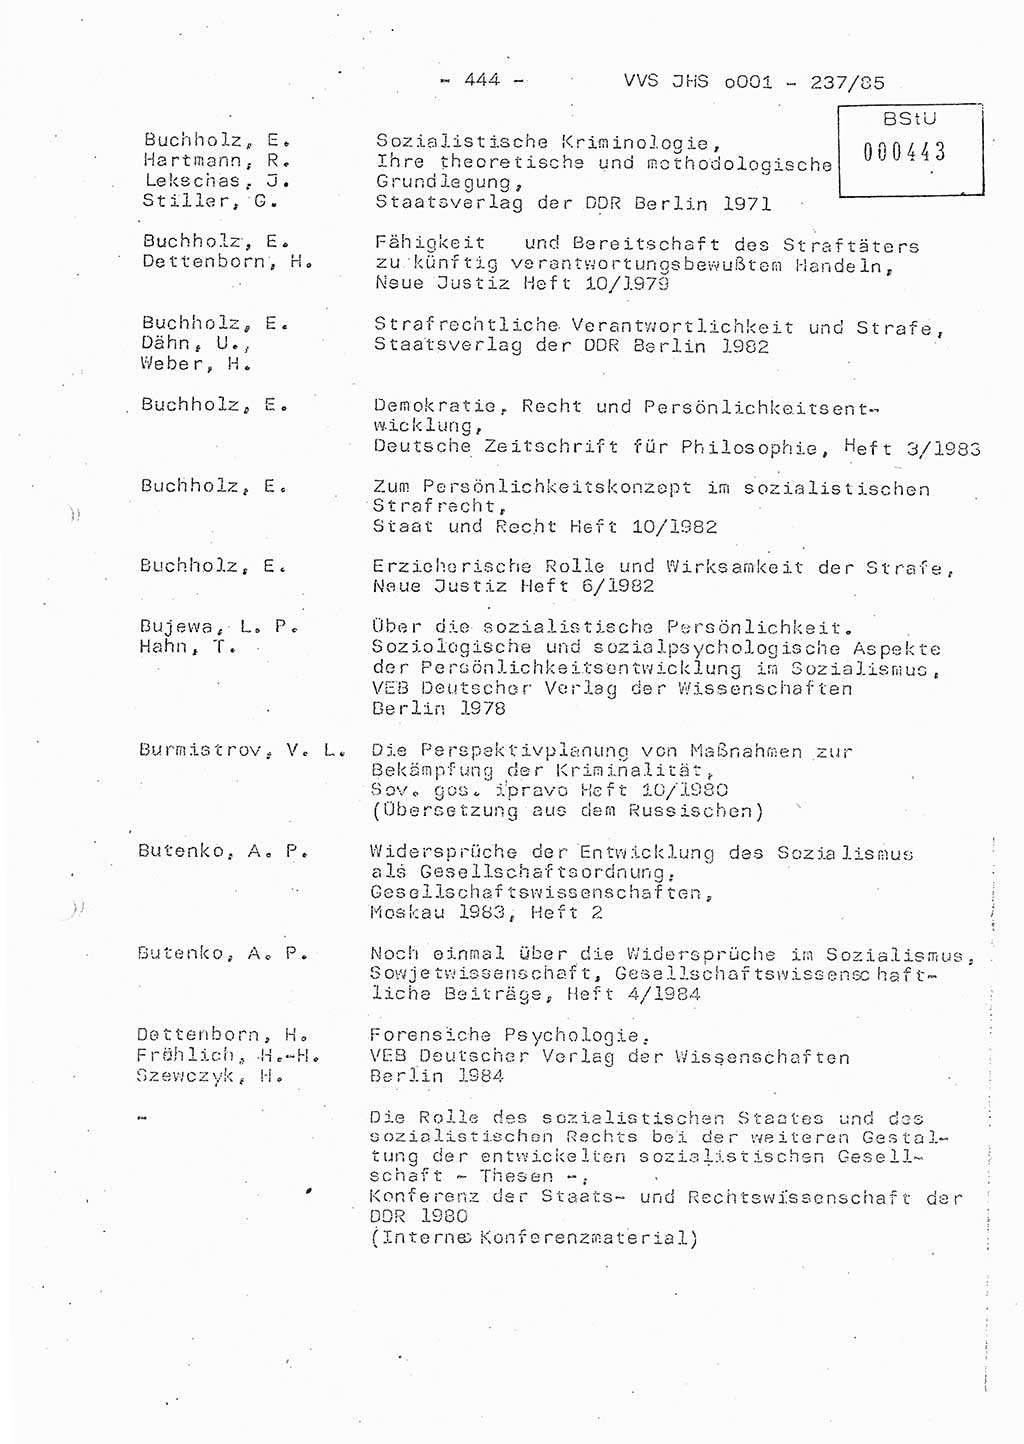 Dissertation Oberstleutnant Peter Jakulski (JHS), Oberstleutnat Christian Rudolph (HA Ⅸ), Major Horst Böttger (ZMD), Major Wolfgang Grüneberg (JHS), Major Albert Meutsch (JHS), Ministerium für Staatssicherheit (MfS) [Deutsche Demokratische Republik (DDR)], Juristische Hochschule (JHS), Vertrauliche Verschlußsache (VVS) o001-237/85, Potsdam 1985, Seite 444 (Diss. MfS DDR JHS VVS o001-237/85 1985, S. 444)